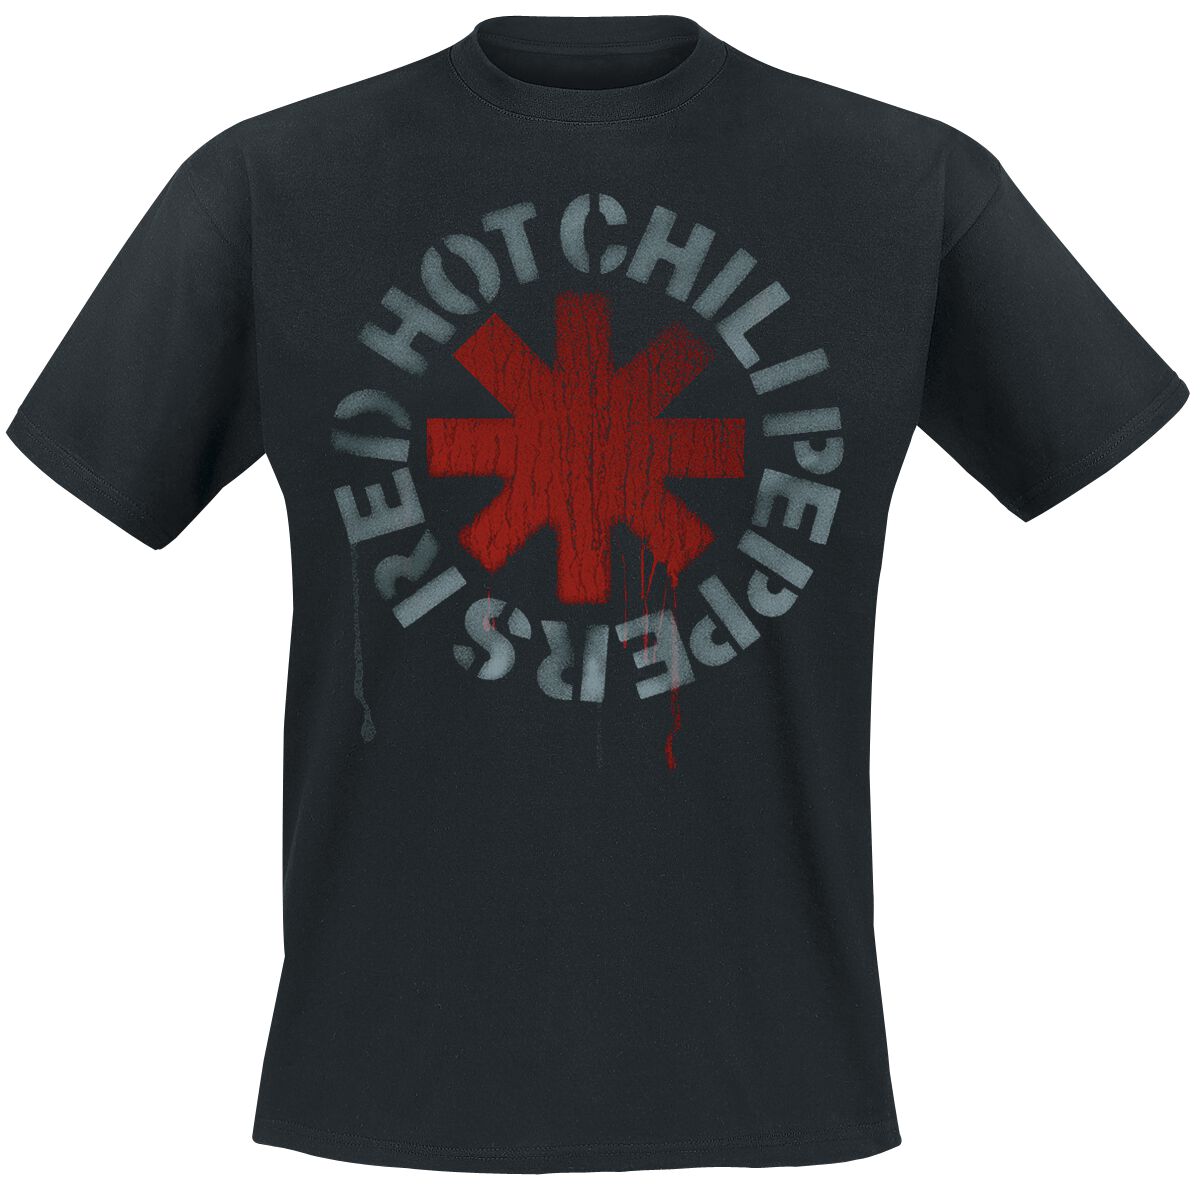 red hot chili peppers t-shirt - stencil black - s bis 5xl - fÃ¼r mÃ¤nner - grÃ¶ÃŸe s - - lizenziertes merchandise! schwarz